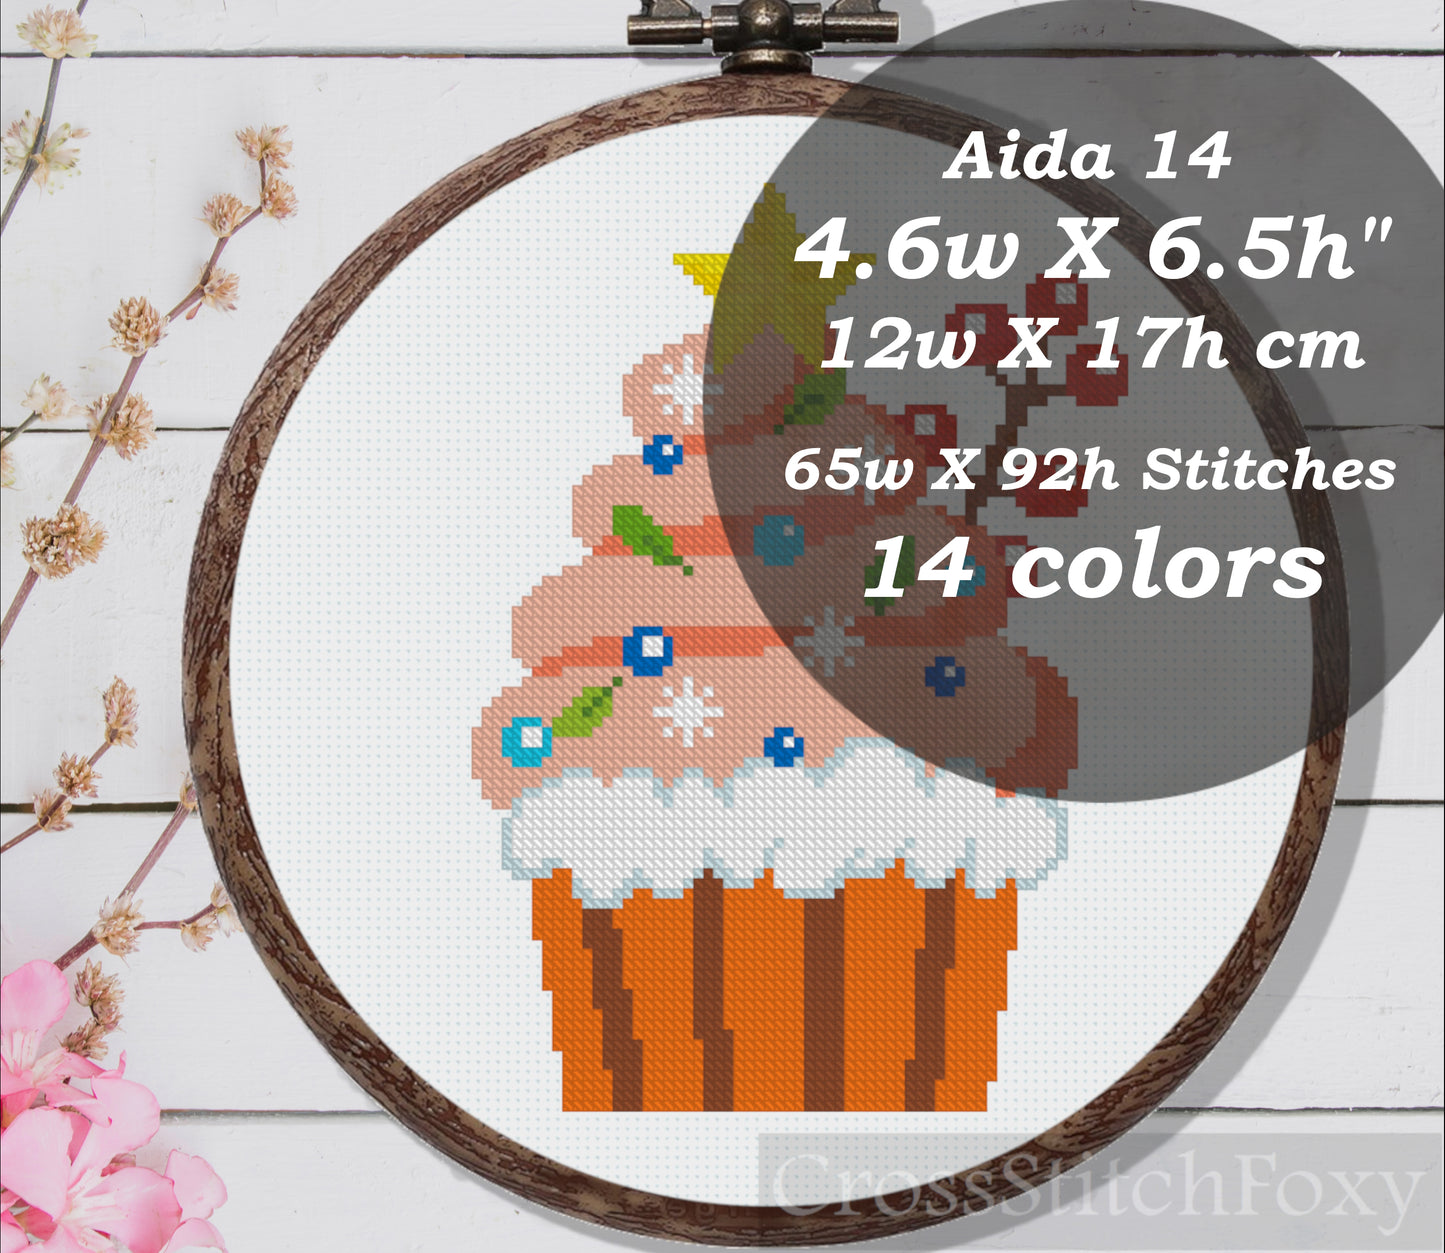 Christmas cupcake cross stitch pattern